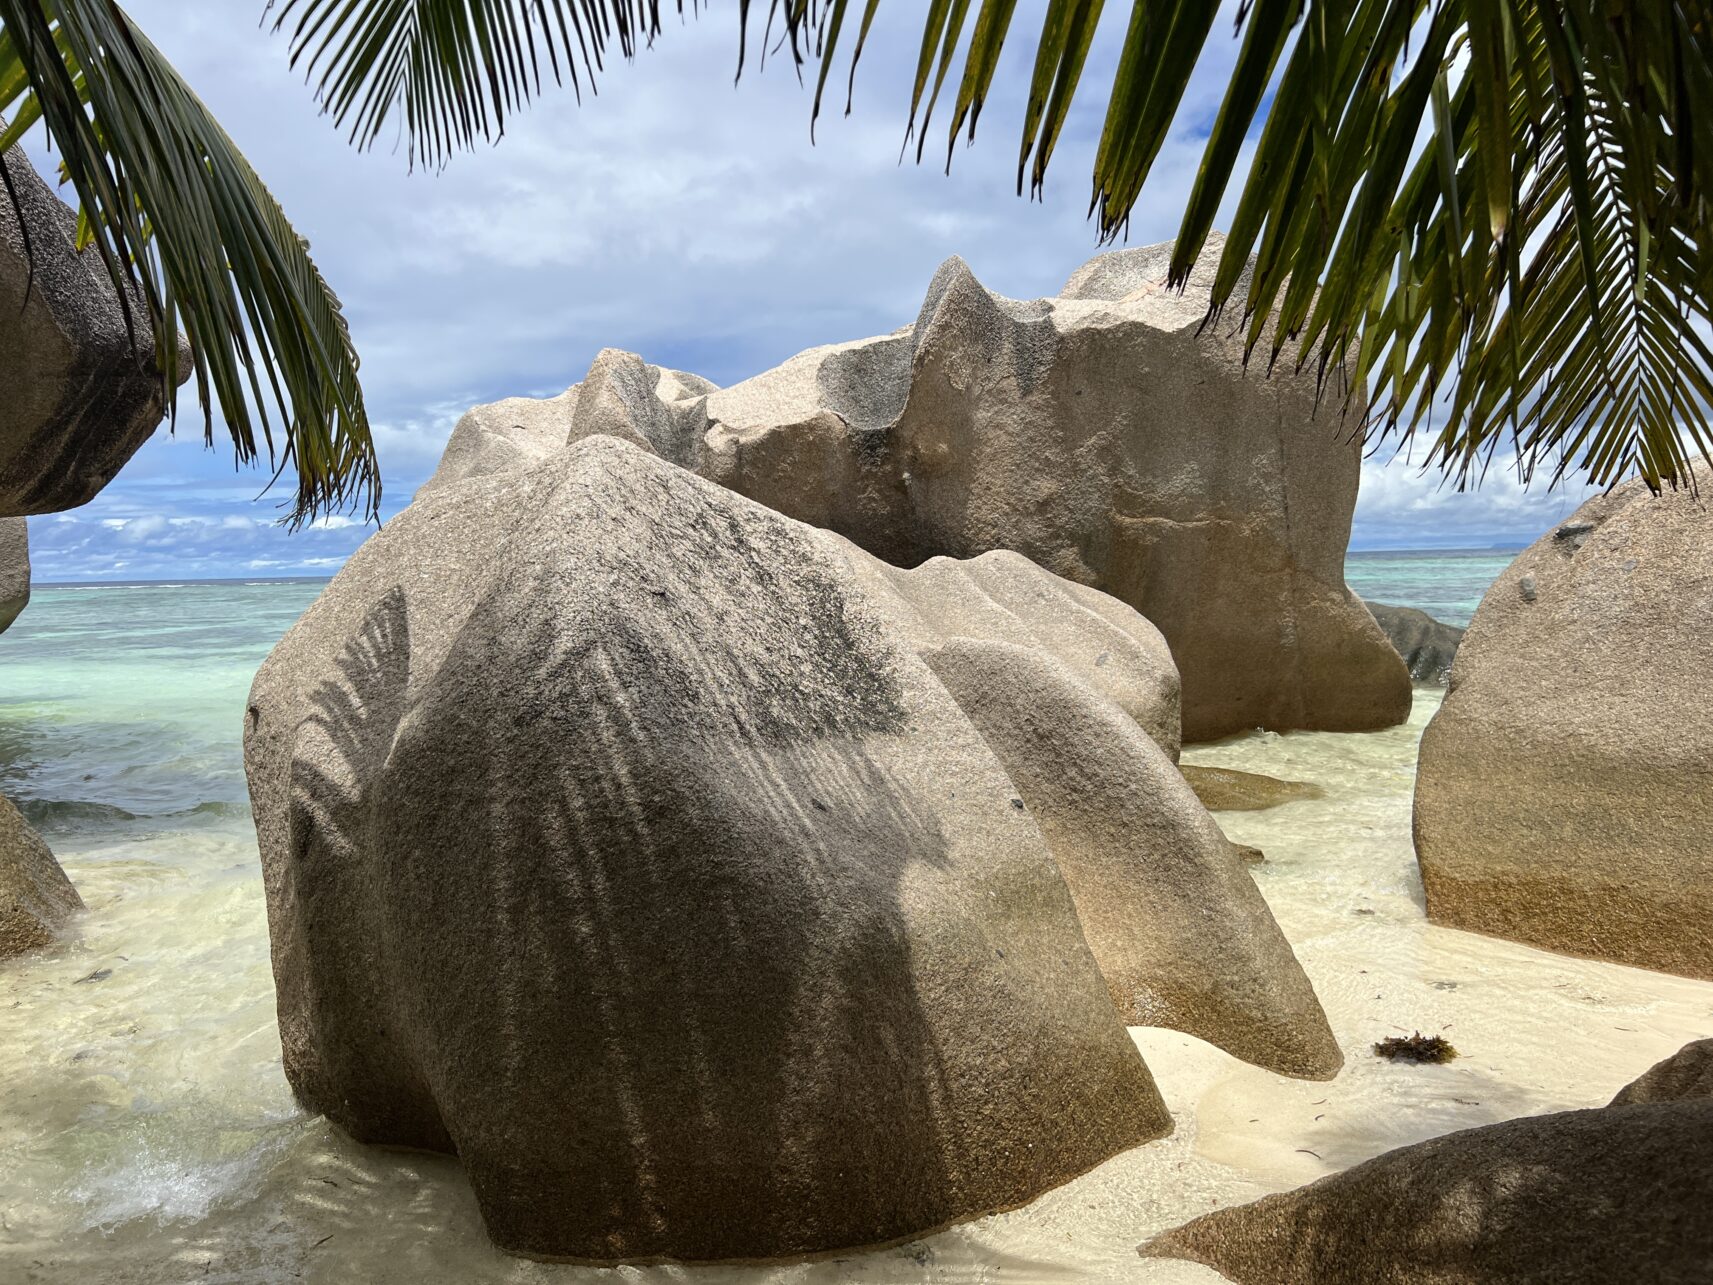 Granitfelsen in allen Farben und Formen - Kunstwerke der Natur auf den Seychellen.